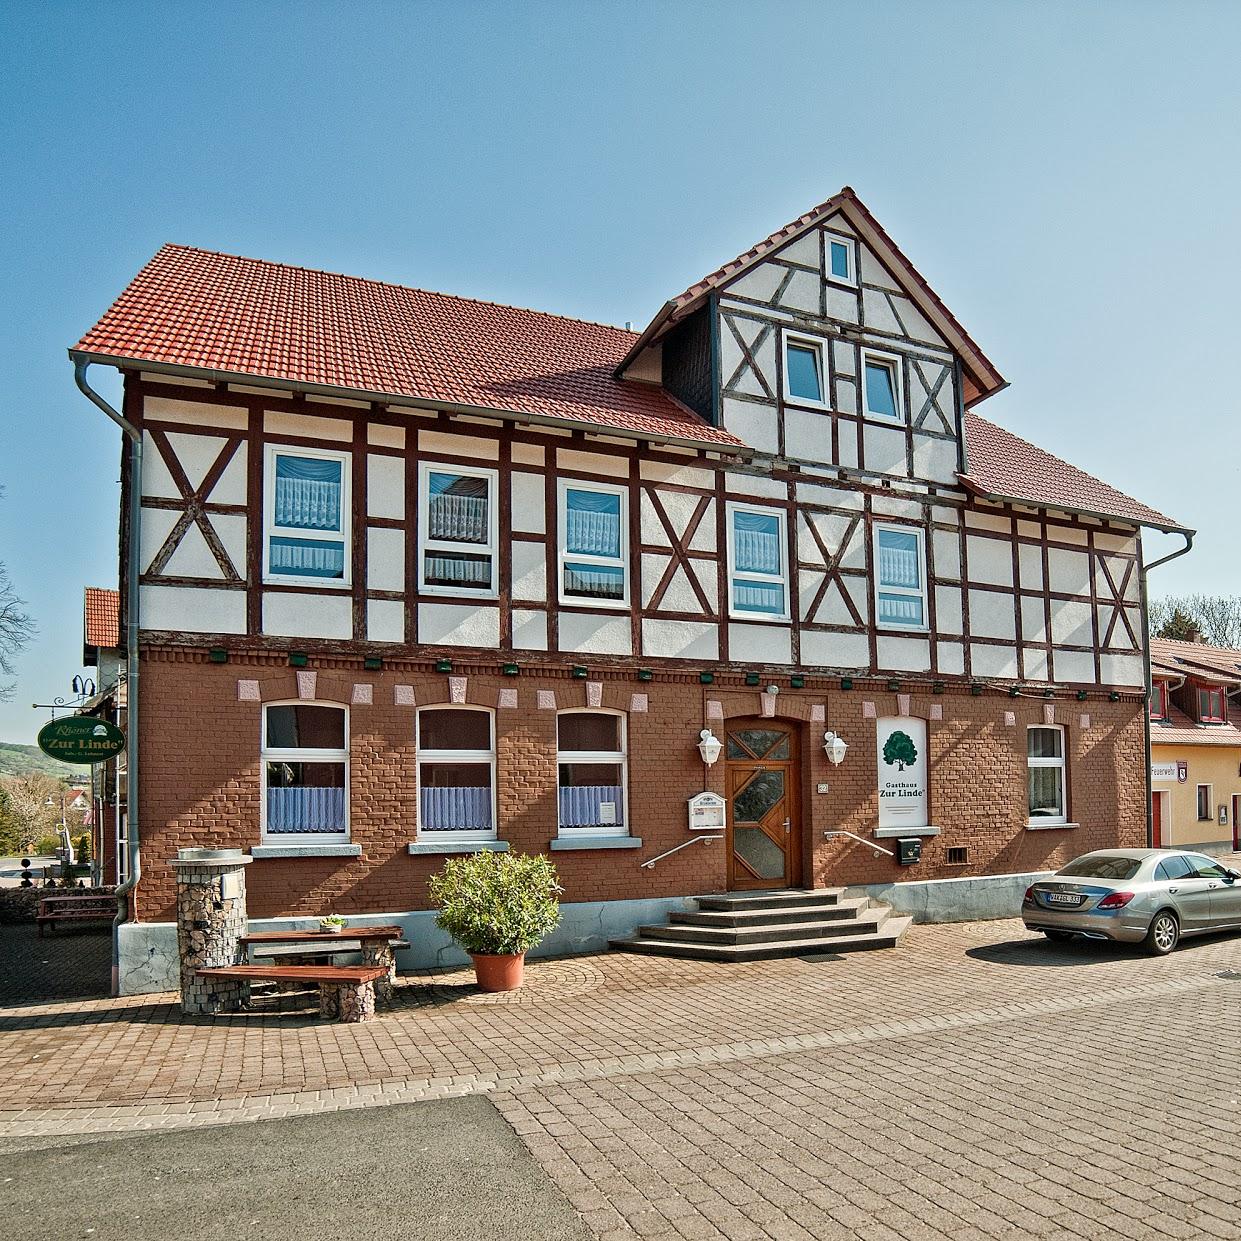 Restaurant "Gasthaus Zur Linde" in Empfertshausen